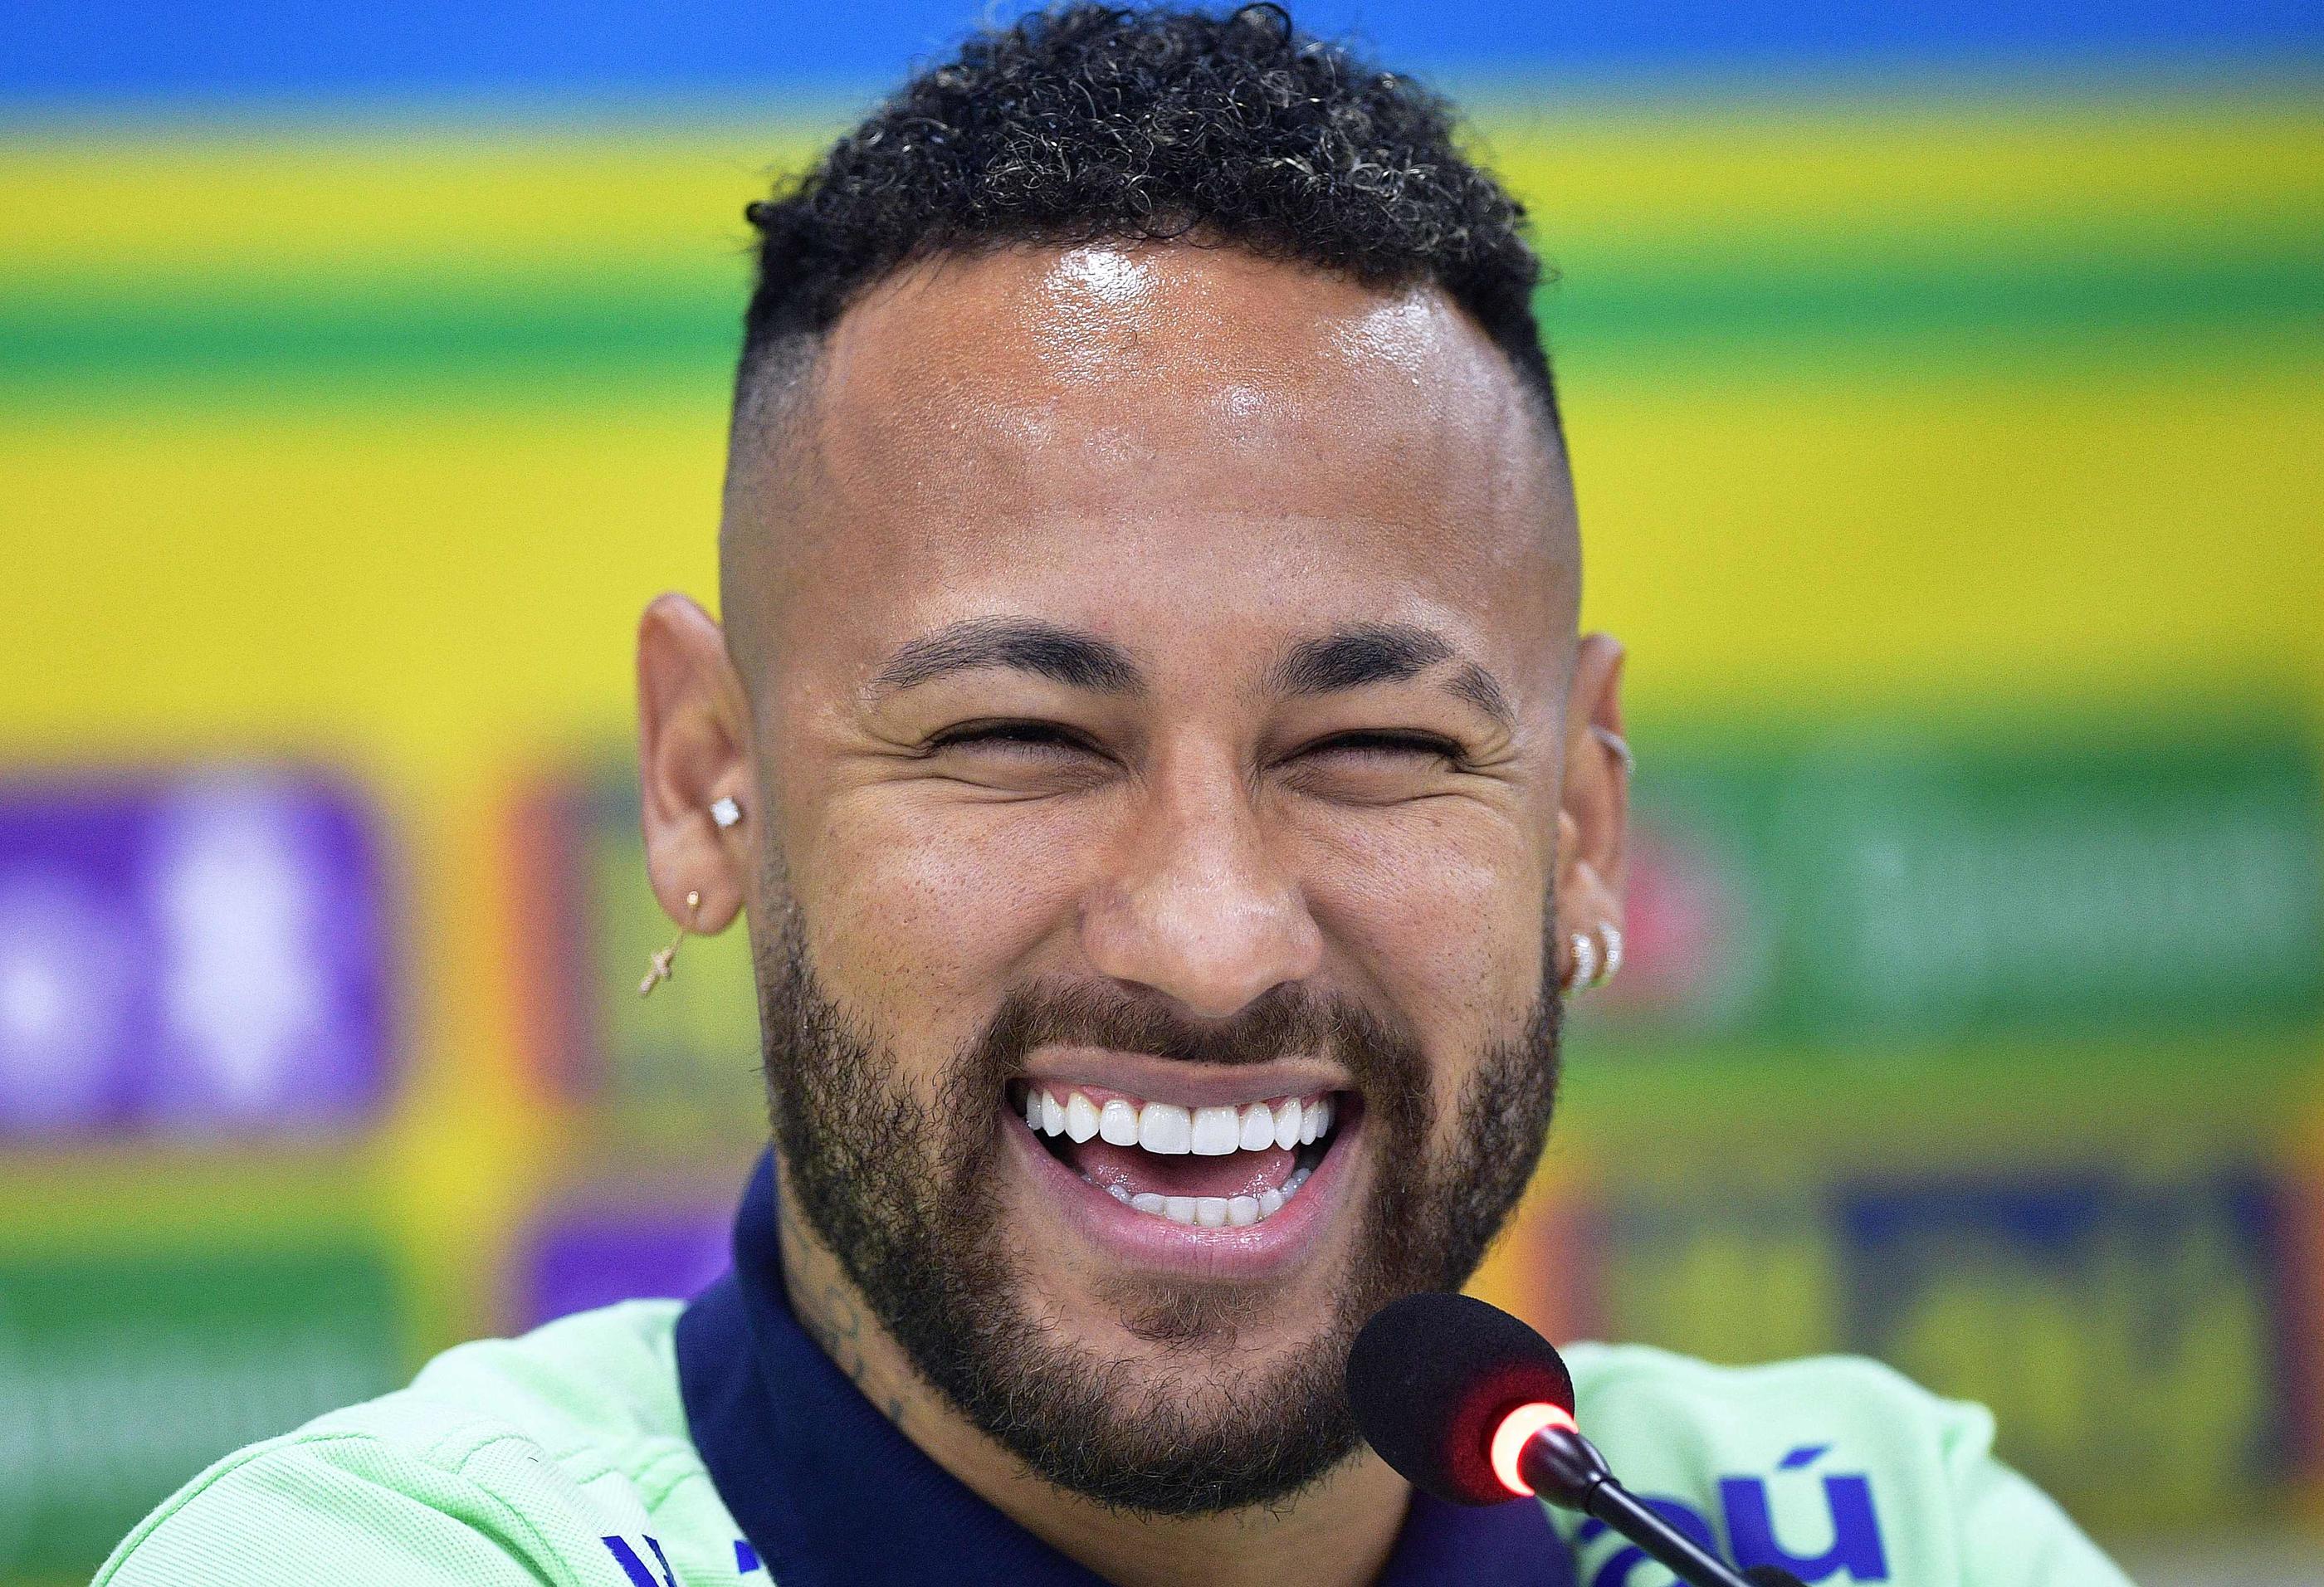 Neymar est pressenti pour être aligné au sein de la Seleçao face à la Bolivie ce vendredi, bien qu'il n'ait pas disputé jusqu'ici le moindre match avec Al-Hilal, son nouveau club saoudien. Photo AFP/CARL DE SOUZA